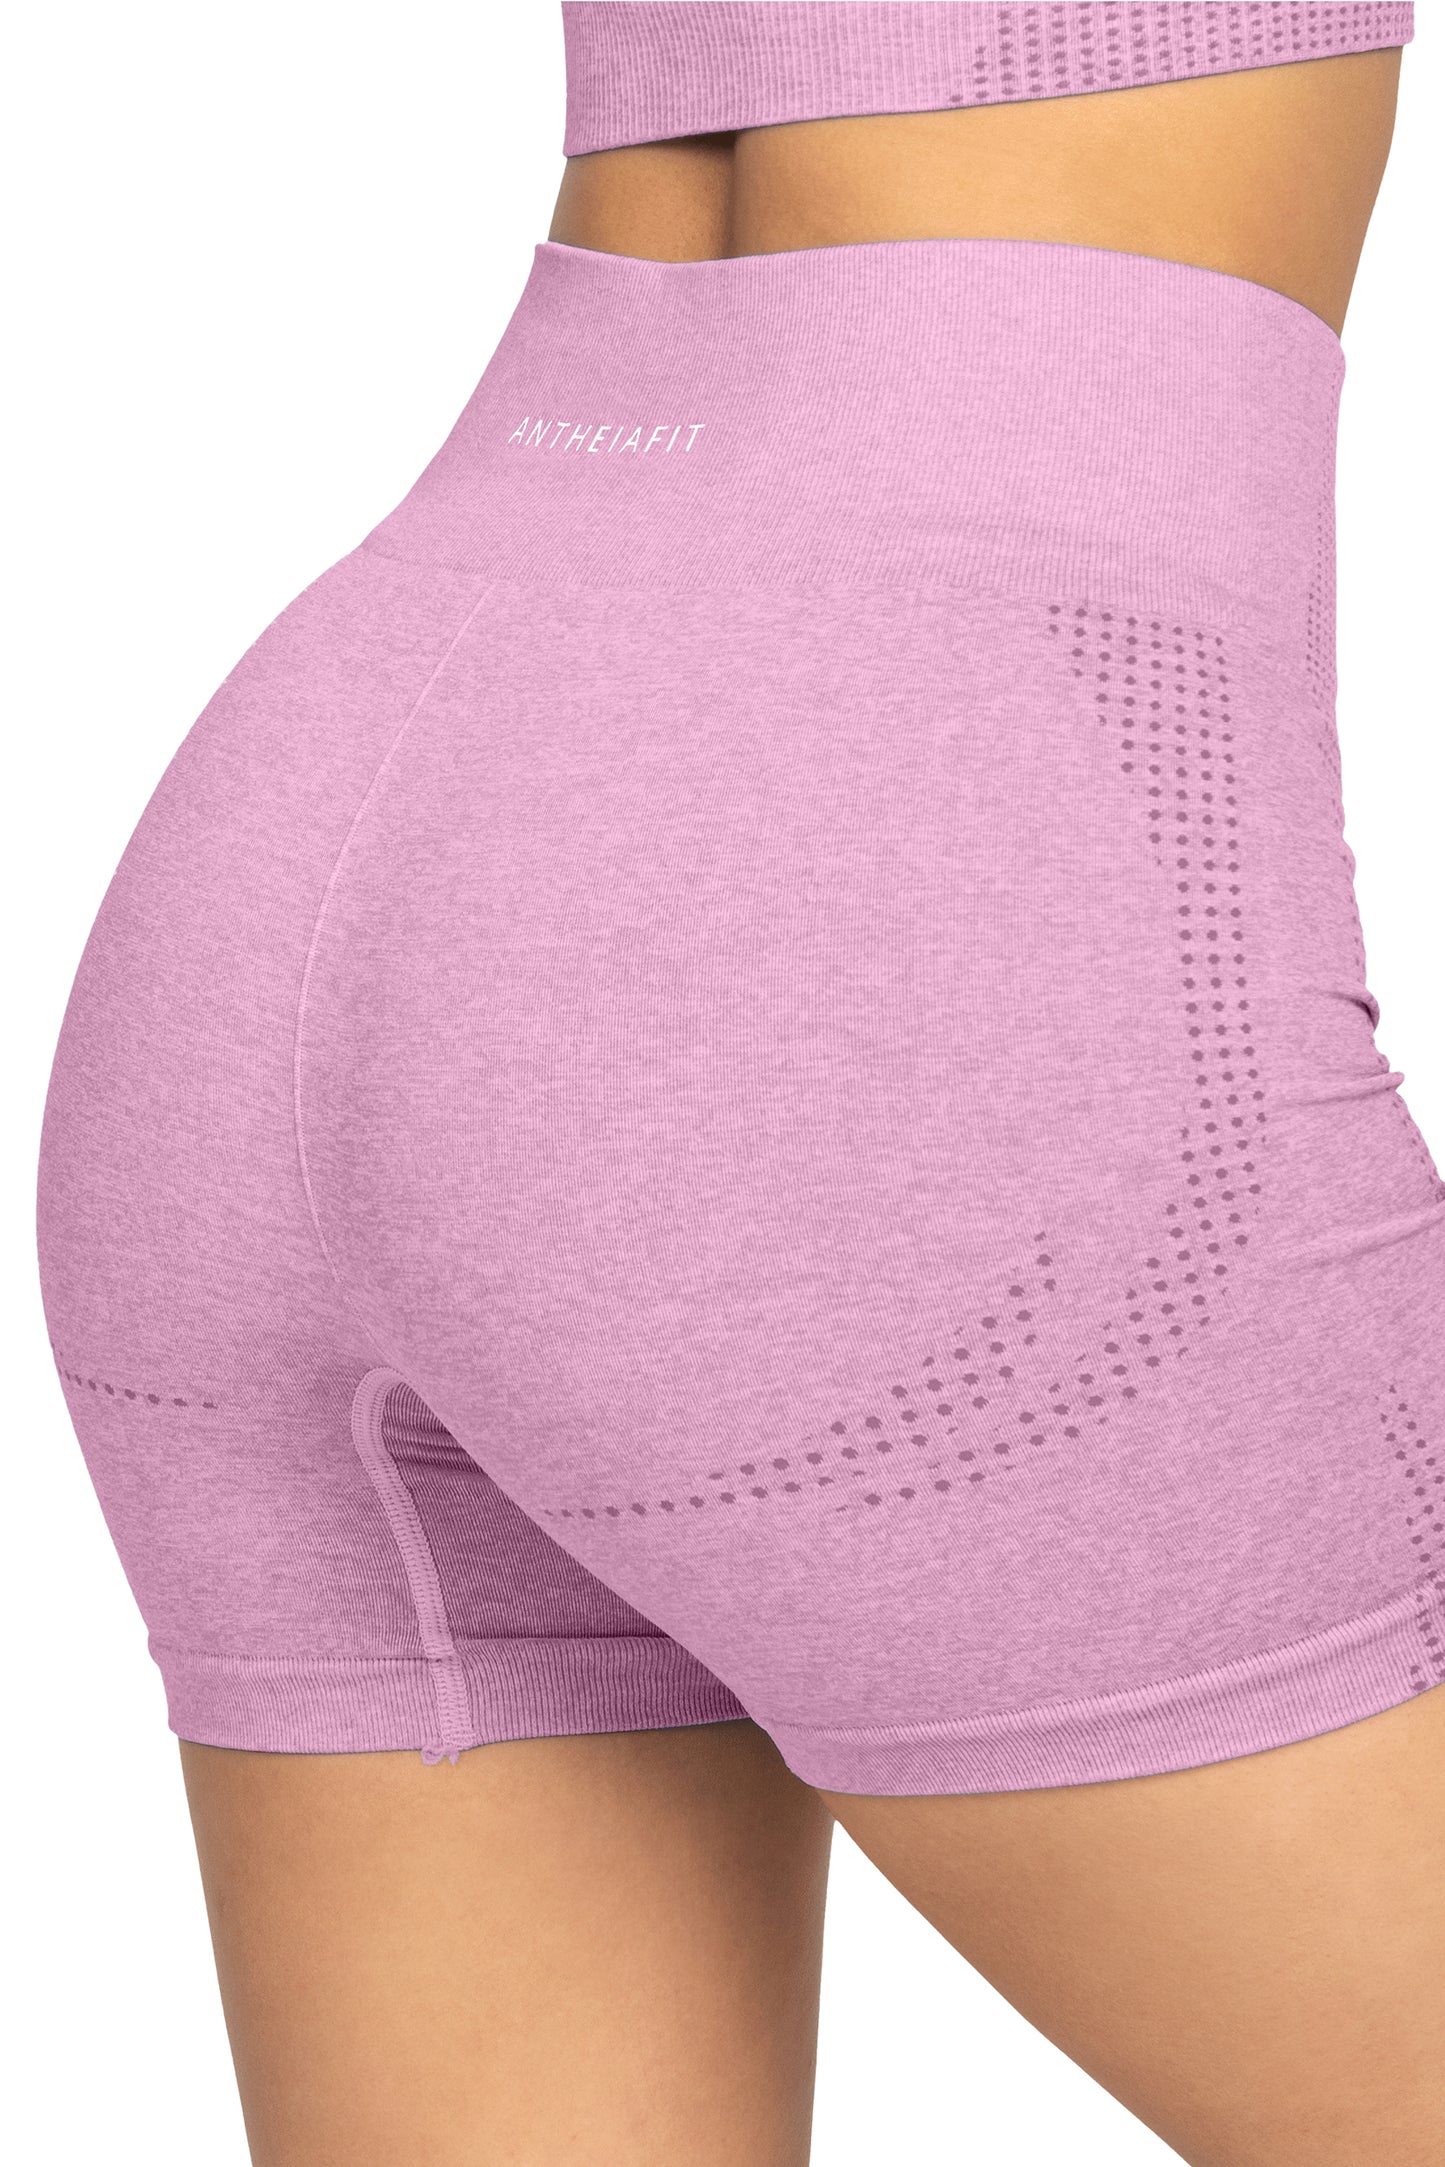 Seamless Pink Gym Shorts  Gym shorts, Pink gym, Shorts